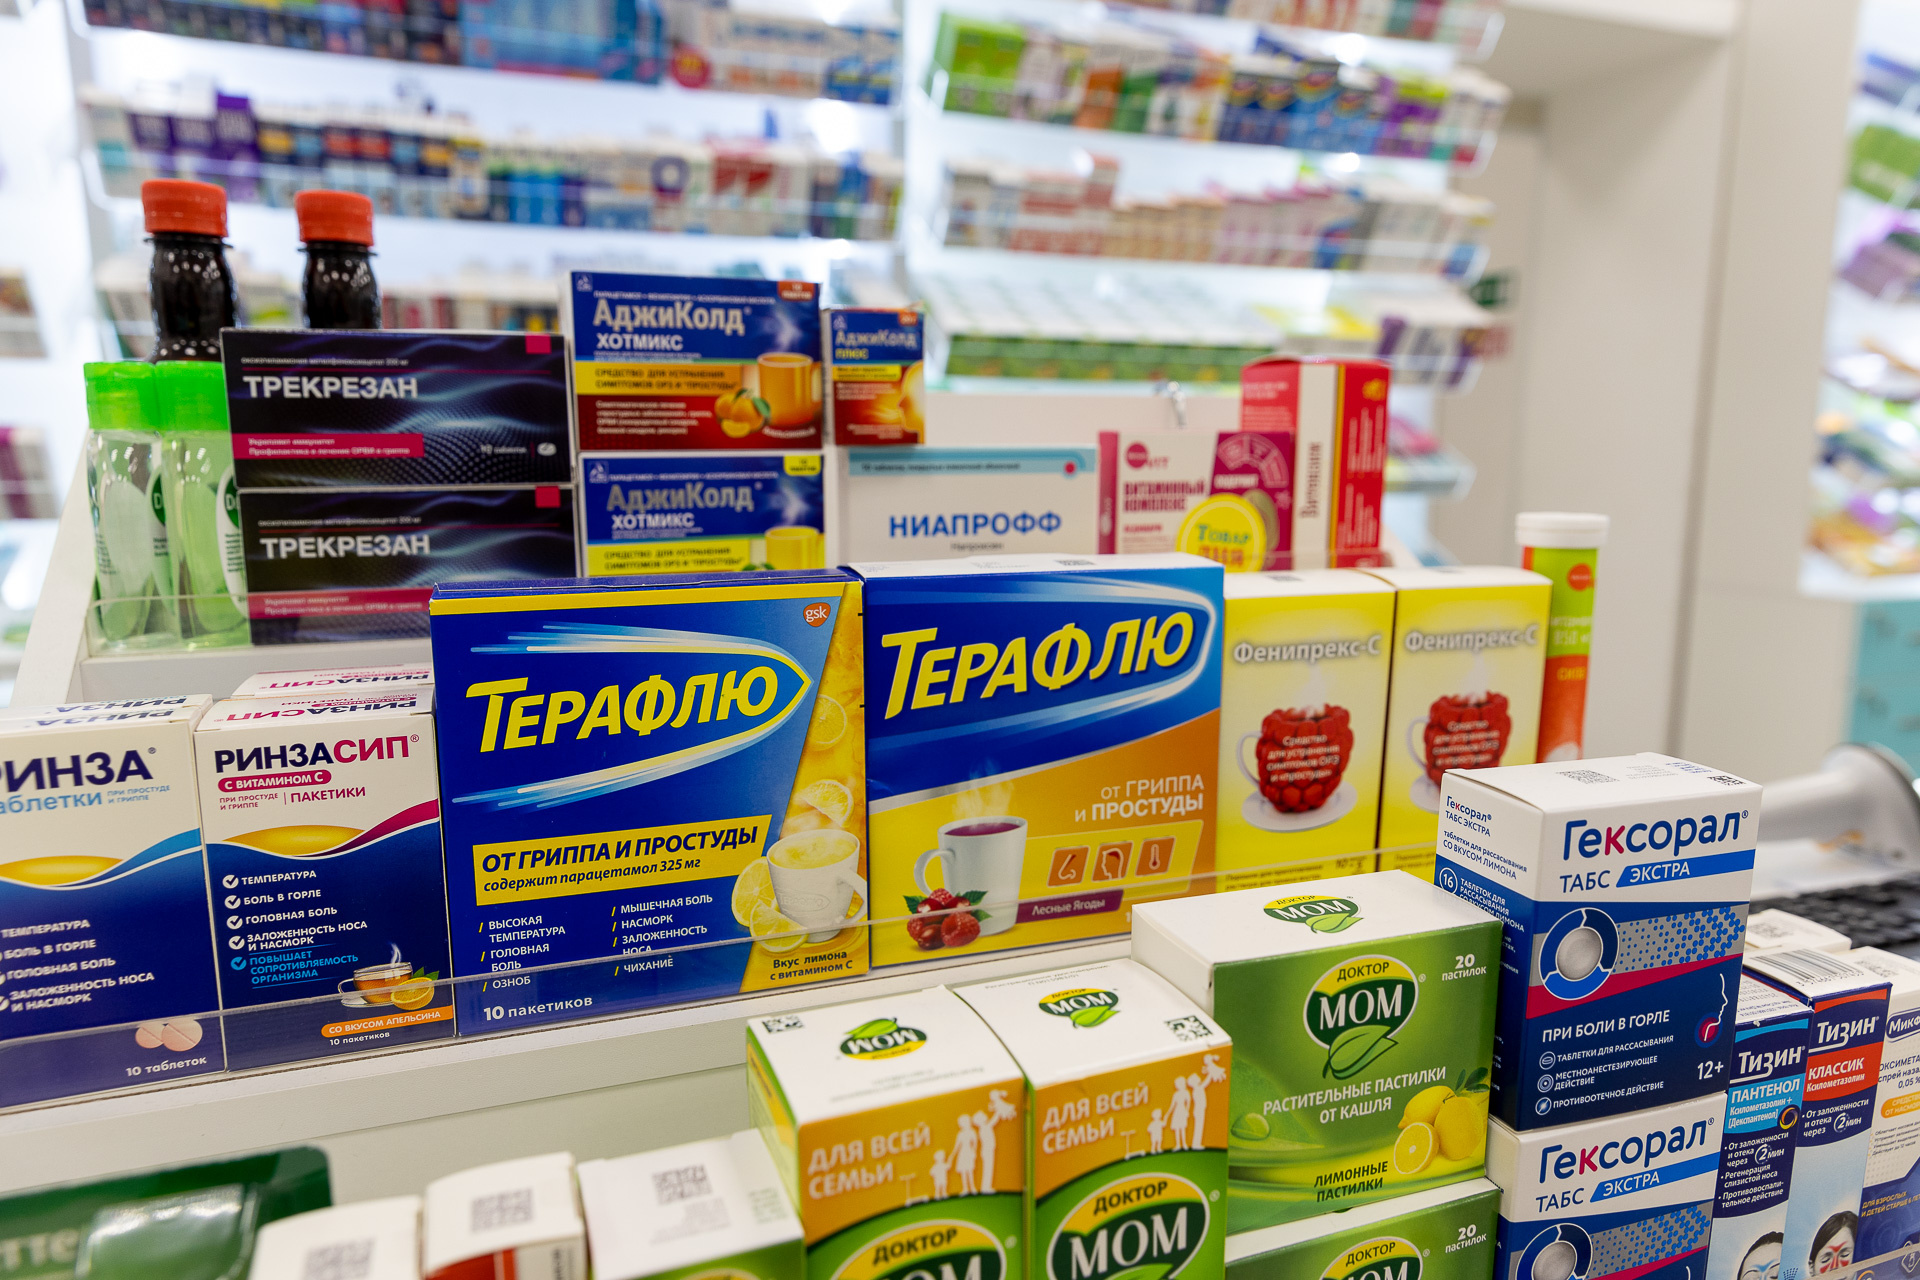 Производитель «Терафлю» и «Вольтарена» прекратил поставки в РФ еще прошлой весной. В некоторых аптеках уже распродали все остатки. Где-то лекарства еще есть